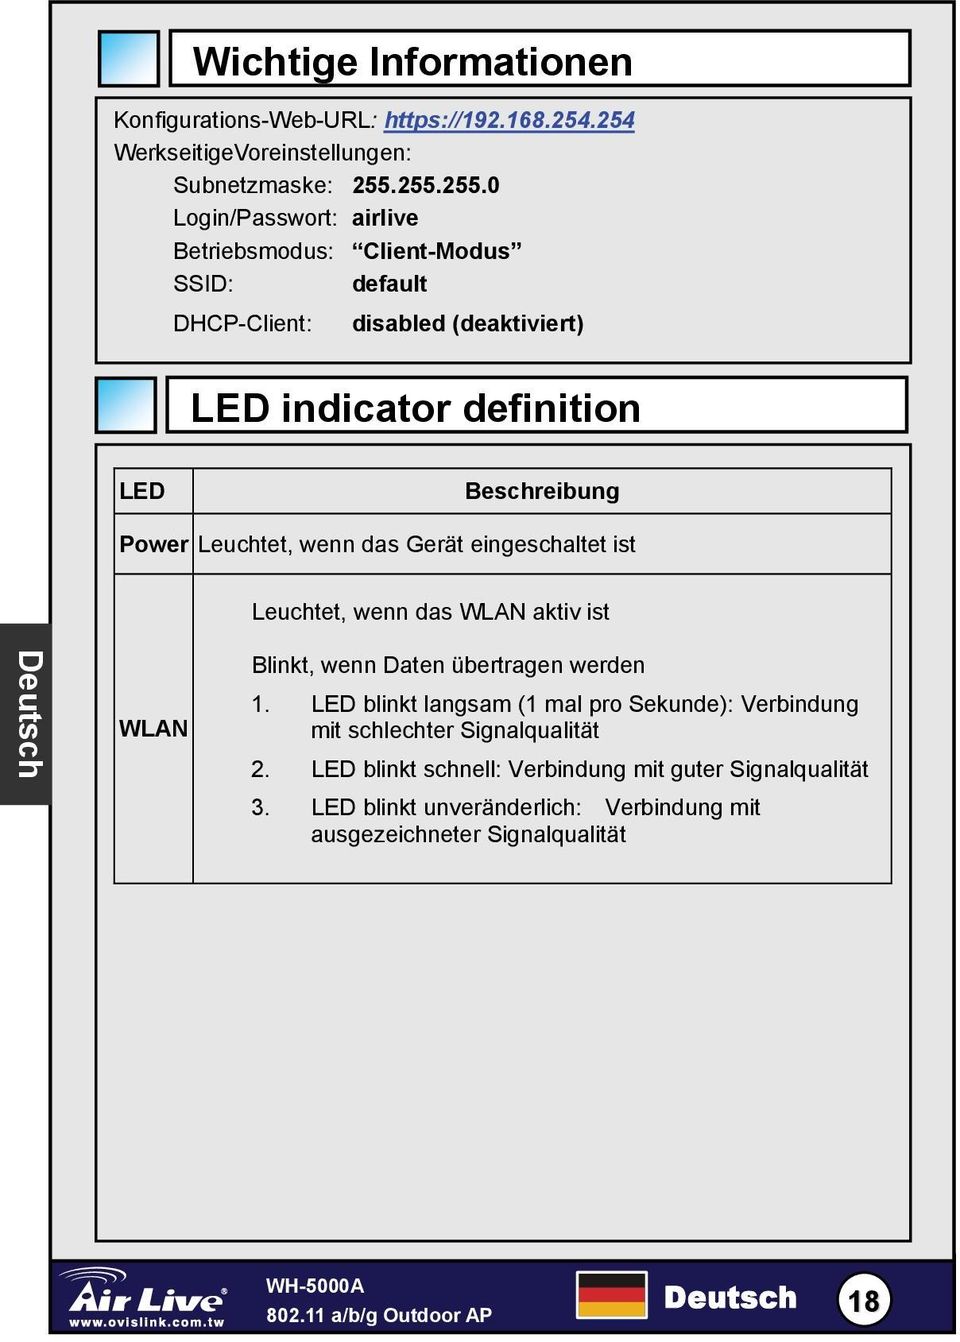 Power Leuchtet, wenn das Gerät eingeschaltet ist Leuchtet, wenn das WLAN aktiv ist Deutsch WLAN Blinkt, wenn Daten übertragen werden 1.